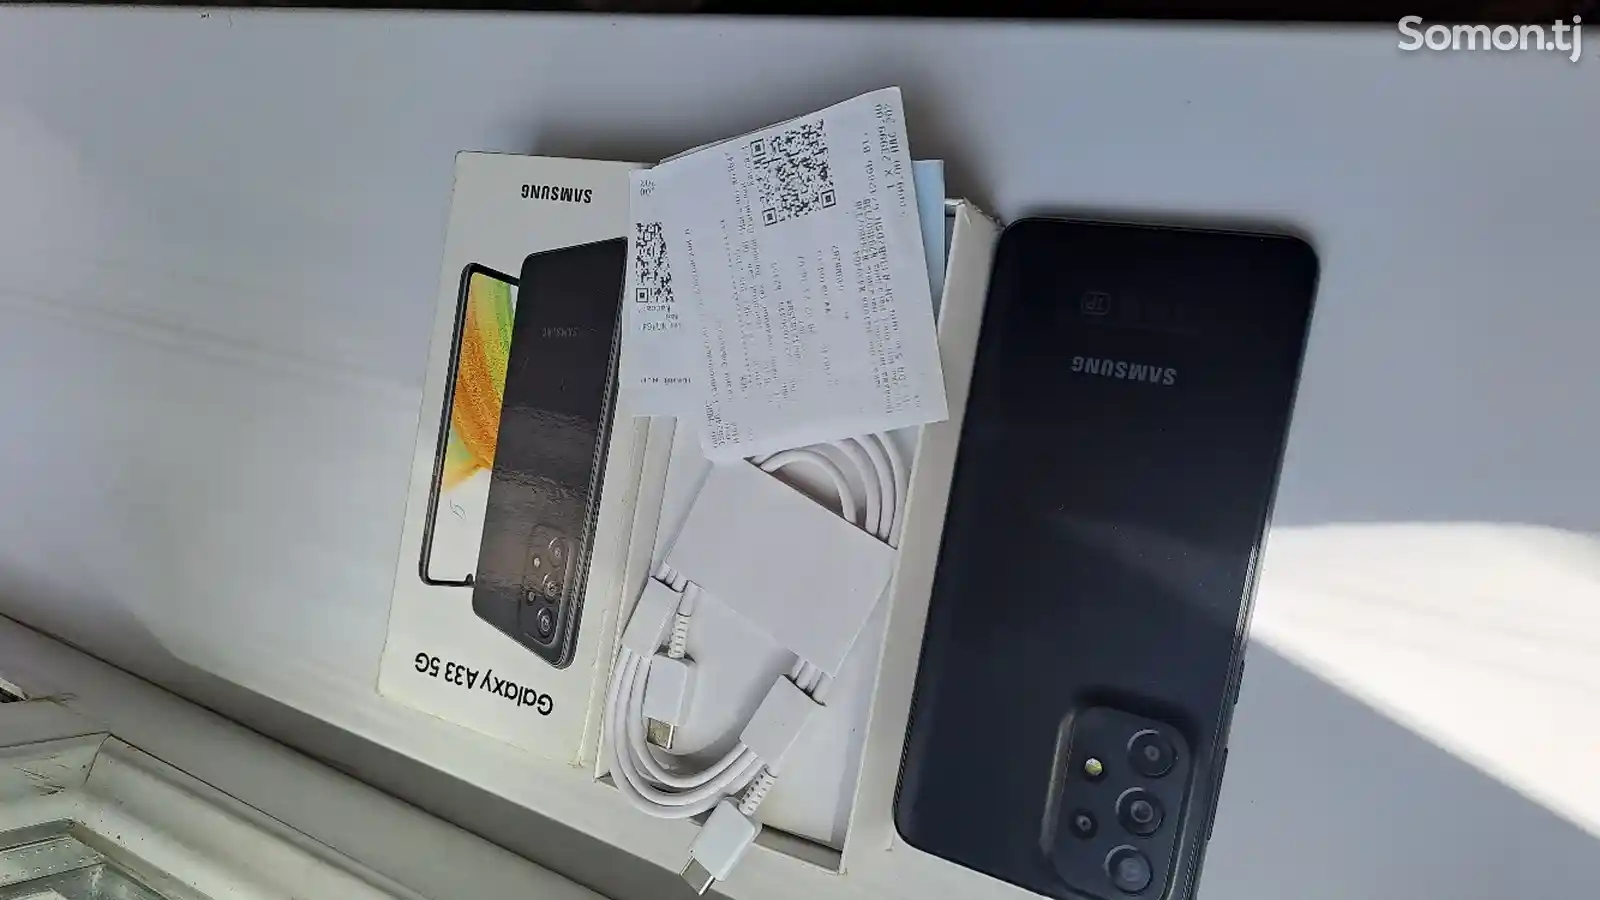 Samsung Galaxy A33-2